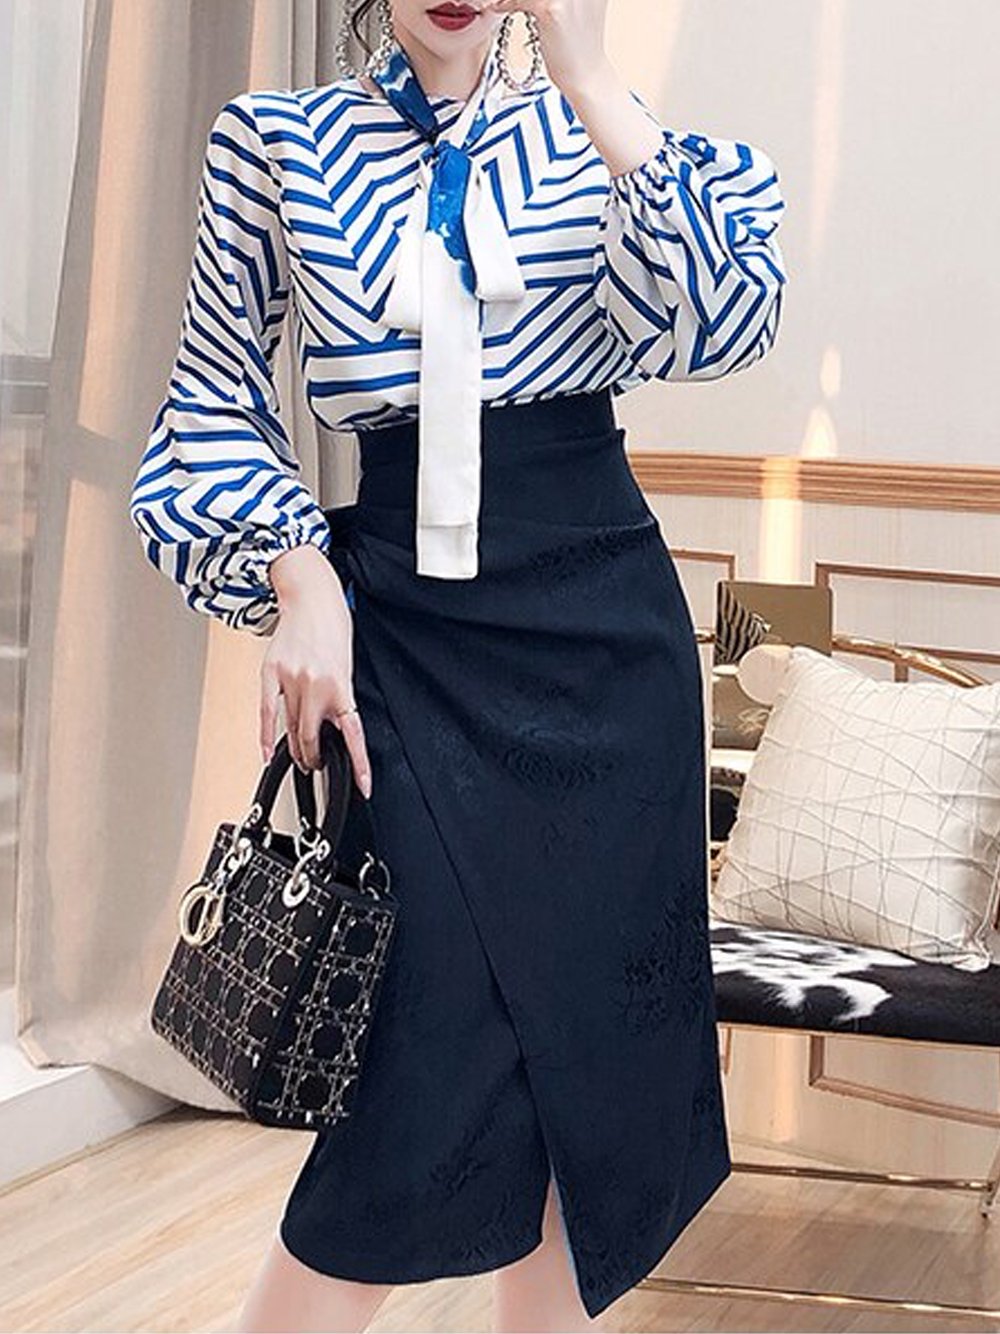 VALERE Stripe Top & Skirt Set